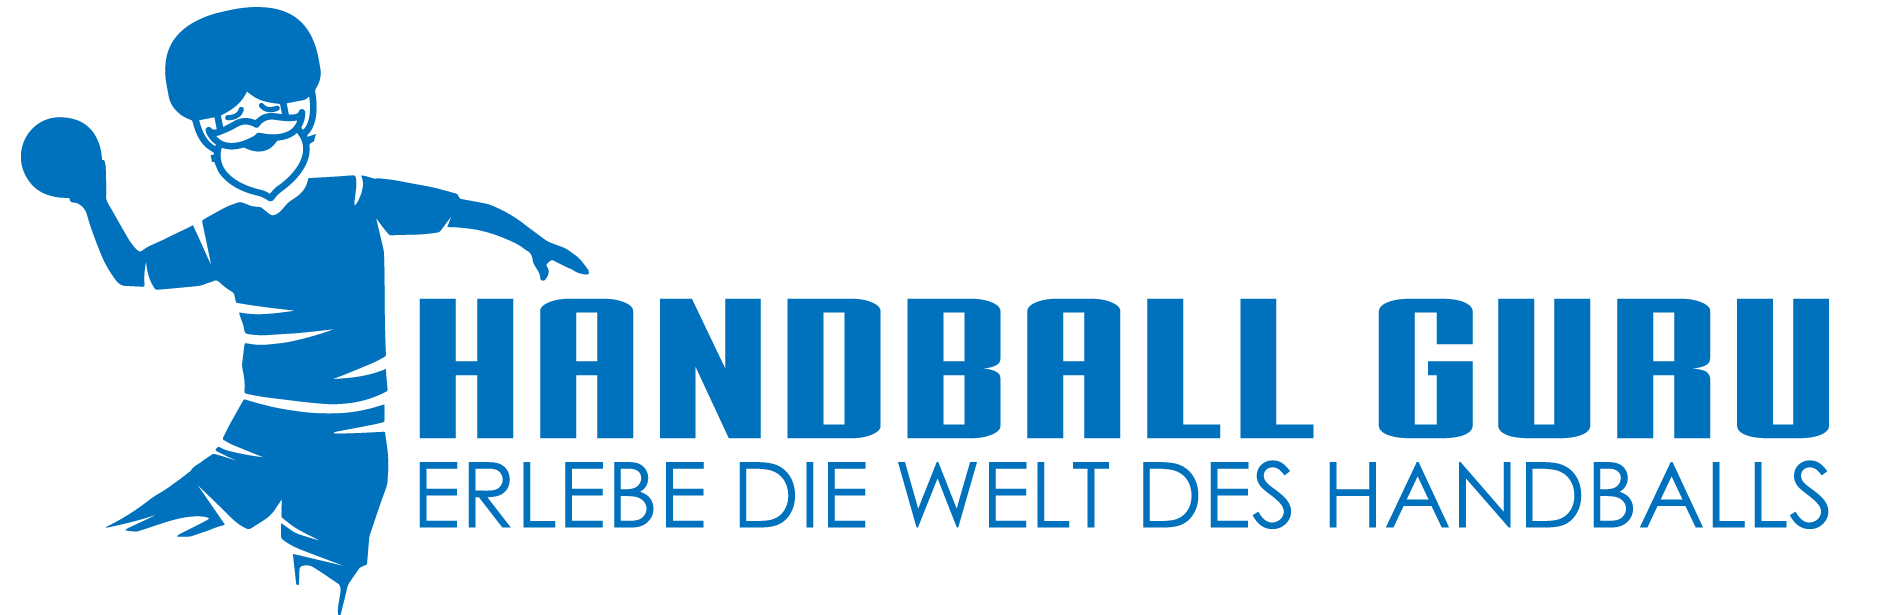 Handball Guru Blog